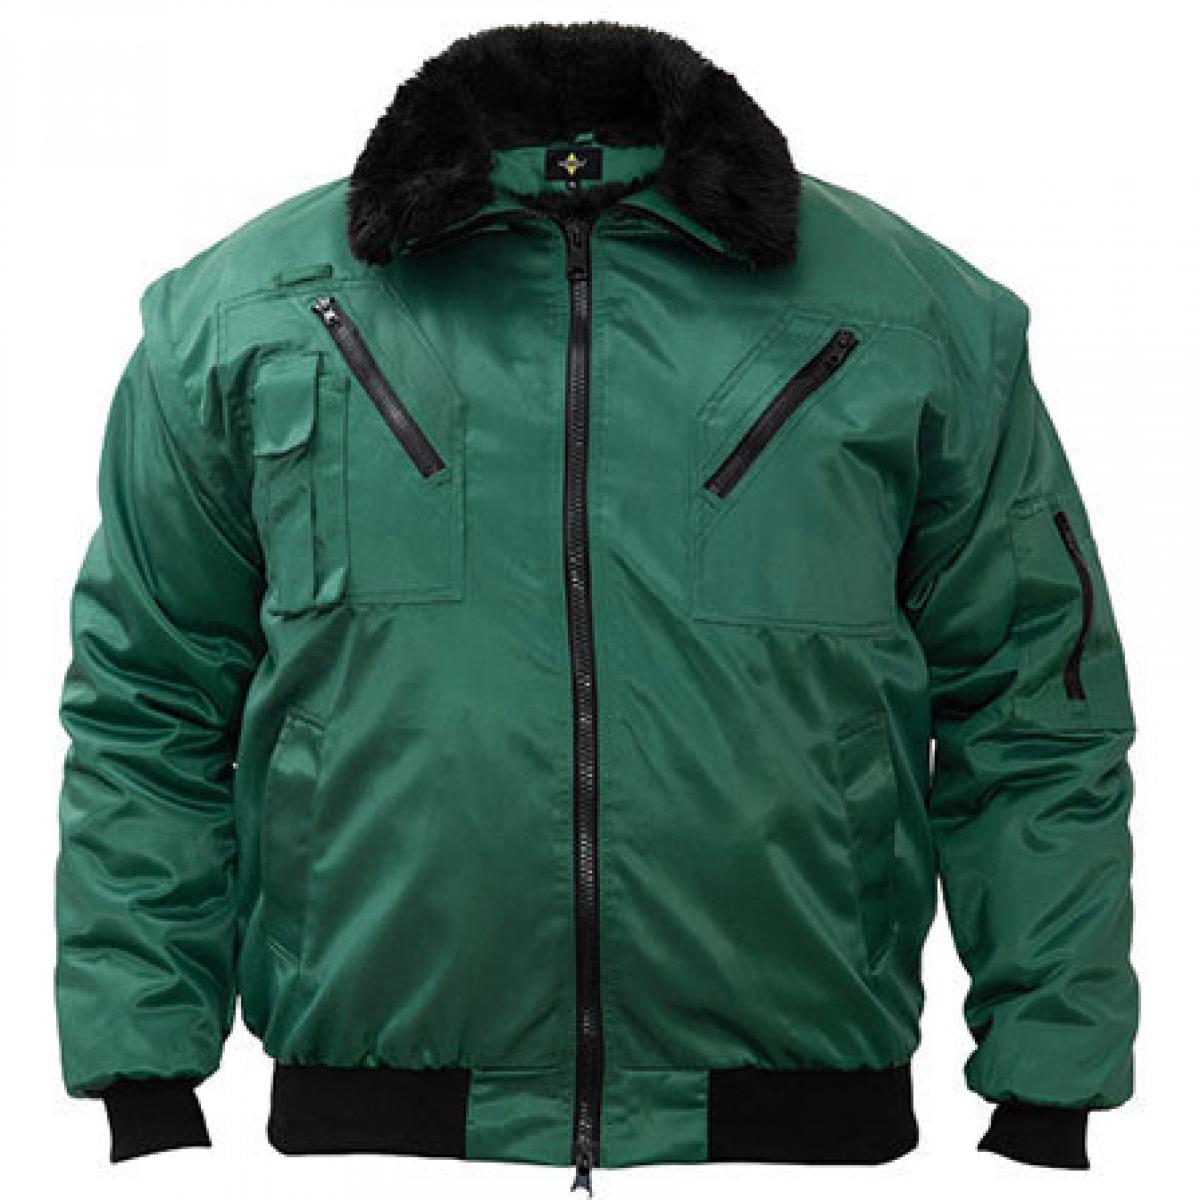 Hersteller: Korntex Herstellernummer: KXPJ Artikelbezeichnung: Pilot Jacket, Vier-in-eins Pilotenjacke Farbe: Green